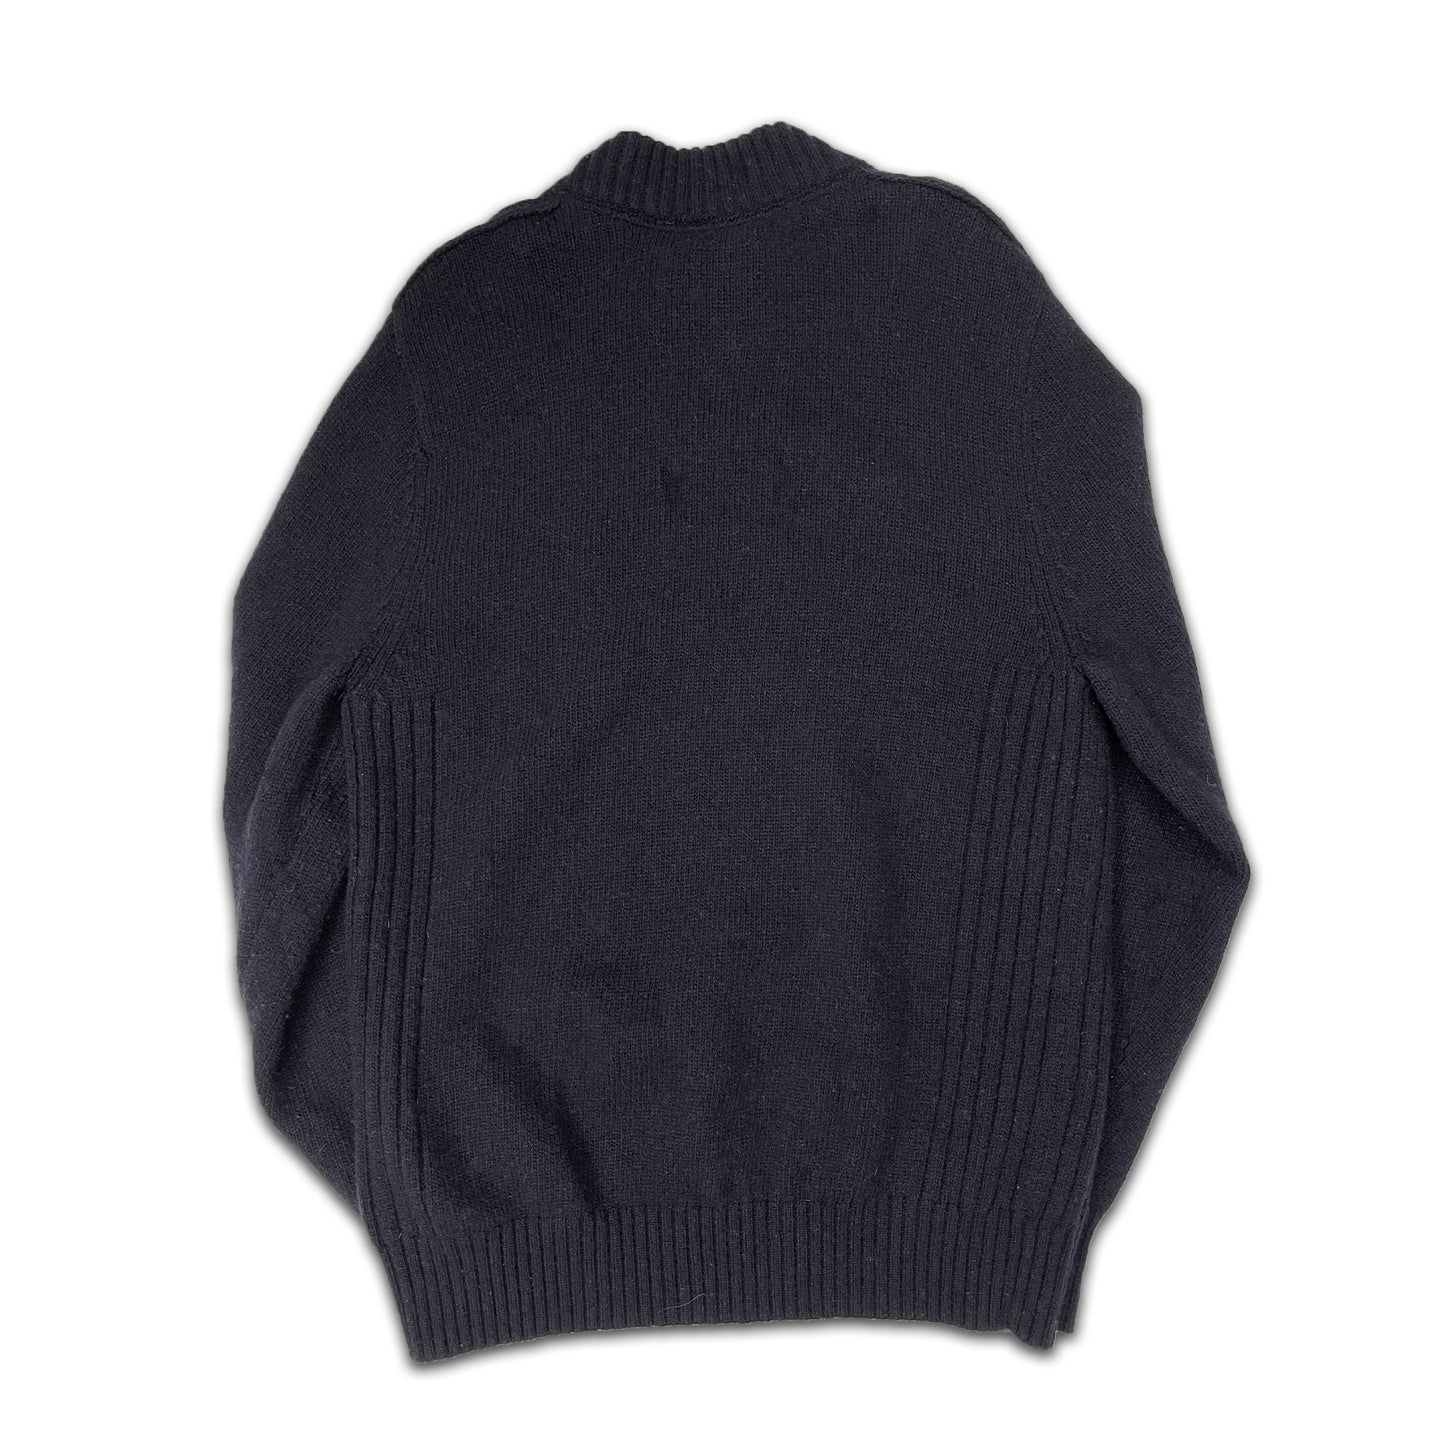 Custard Reclaimed Knitted Wool Navy Jumper | Size Medium